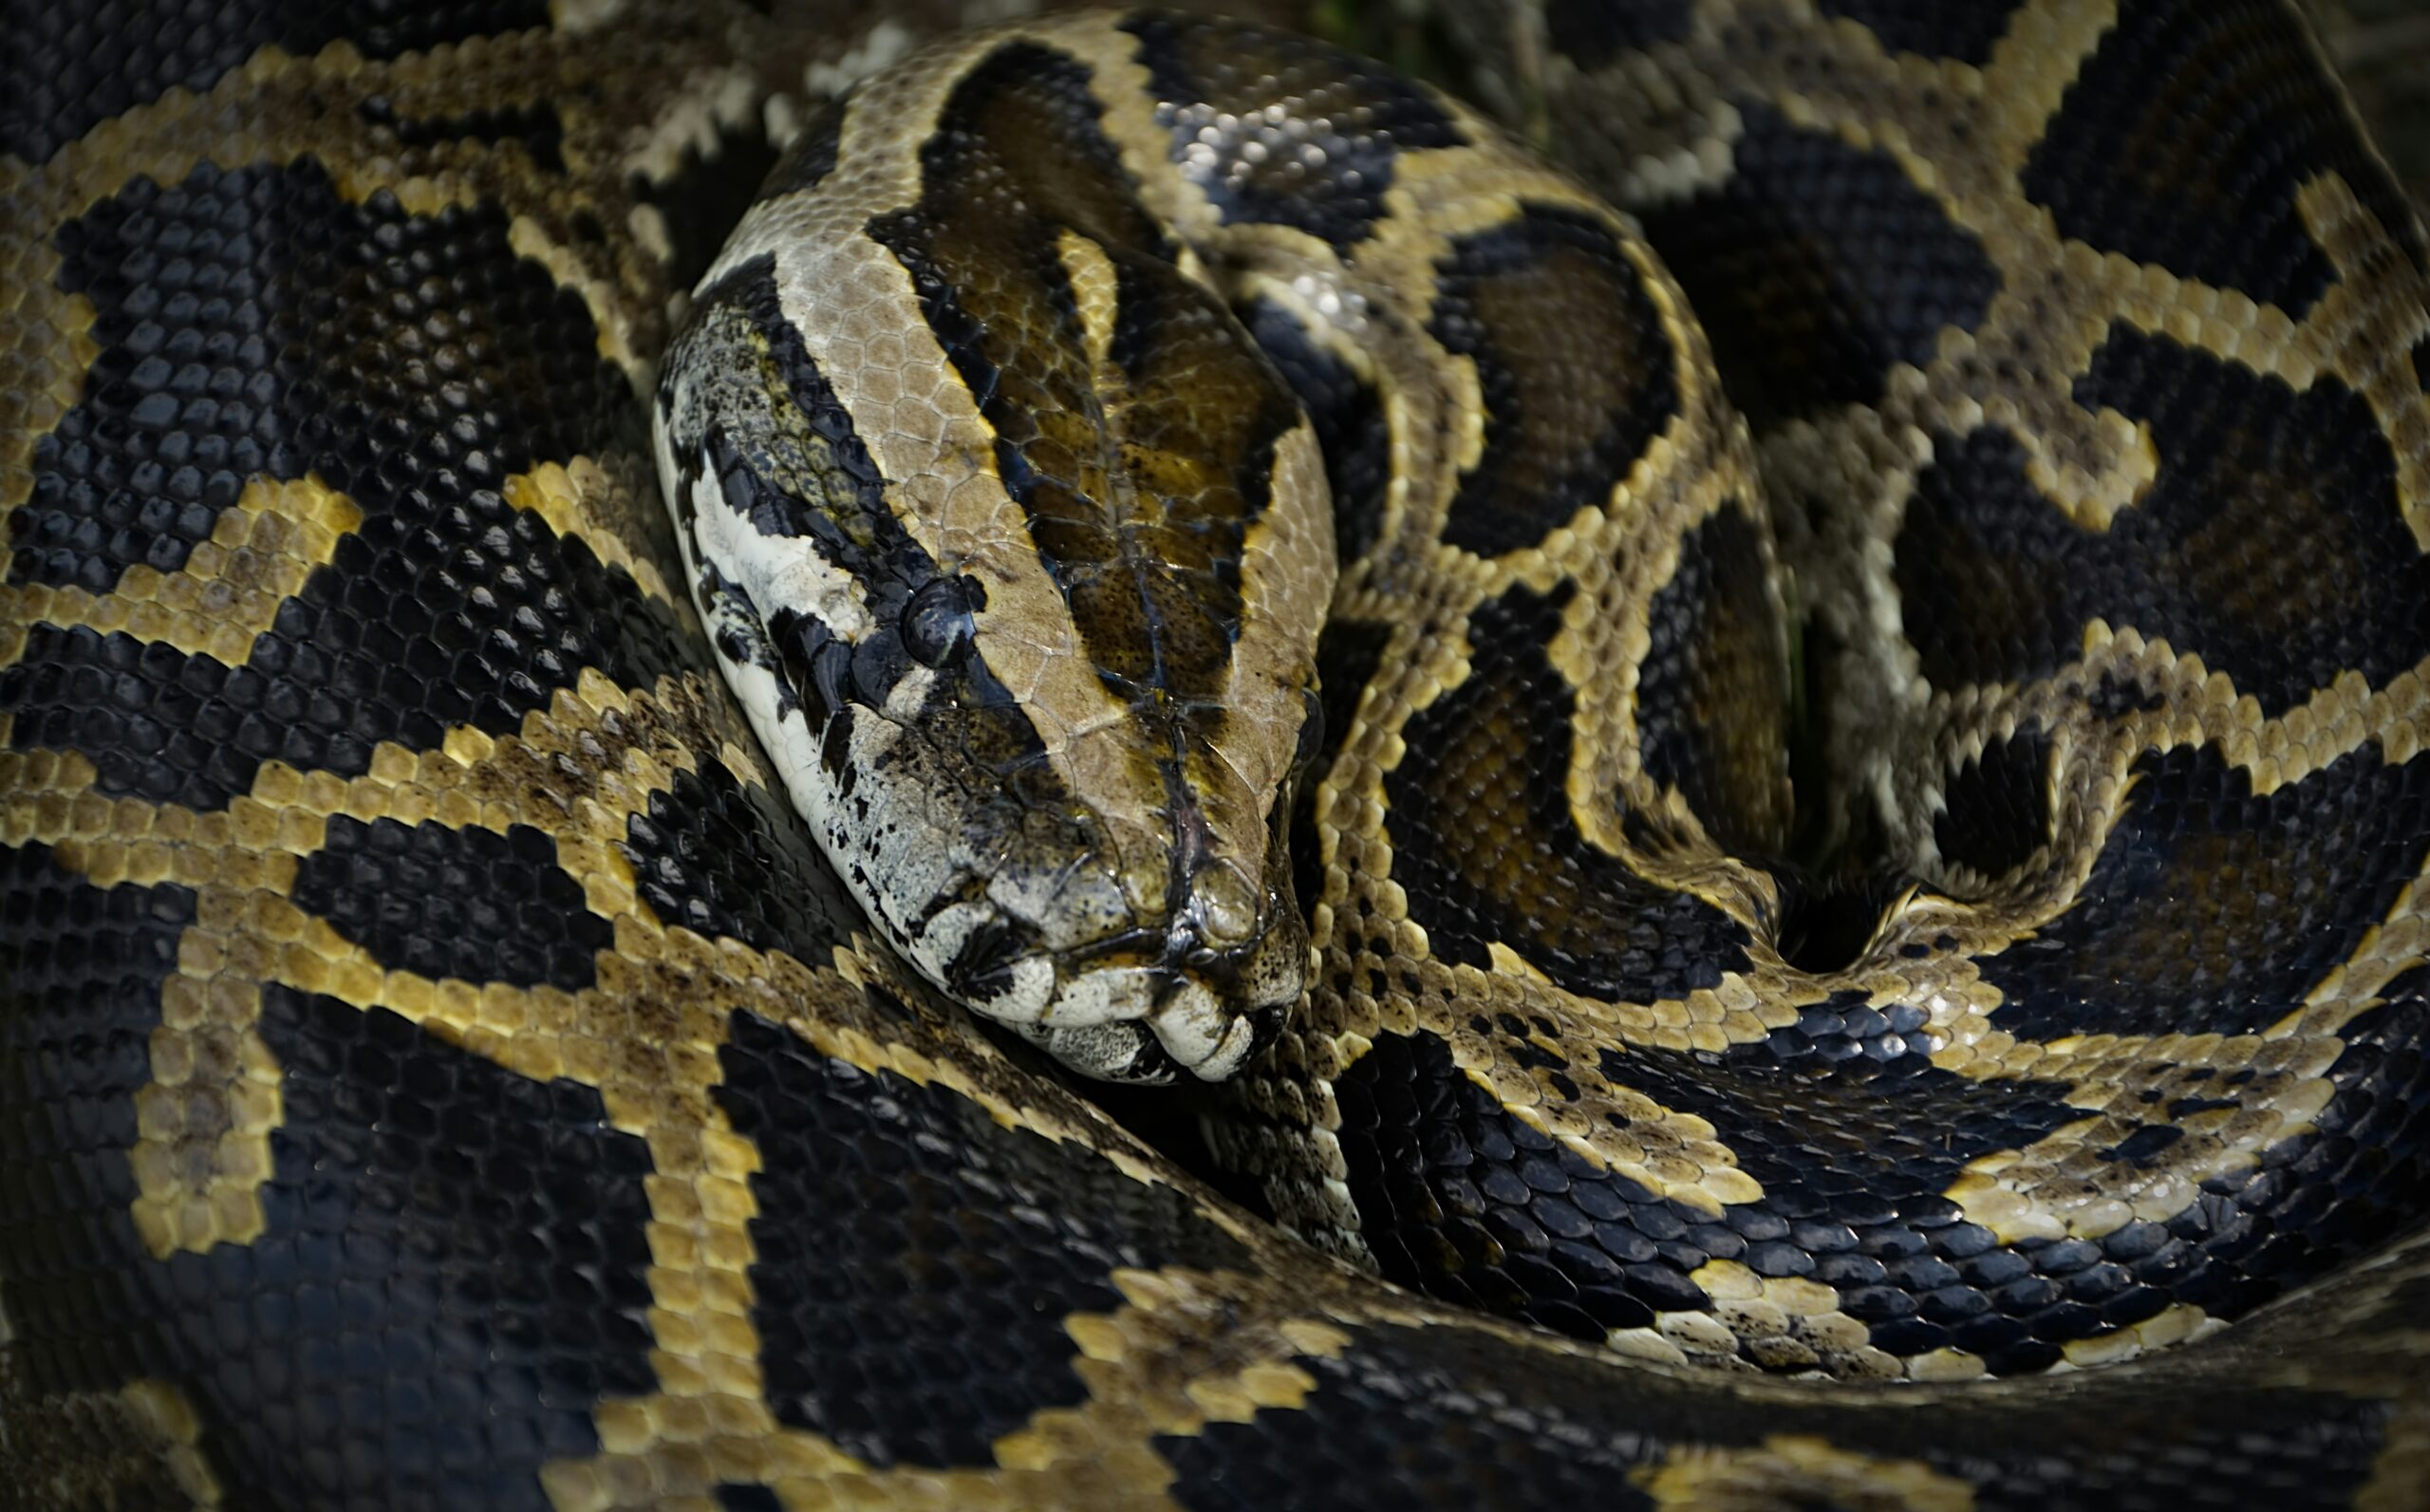 Un énorme python birman de 90 kg capturé en Floride par cinq hommes